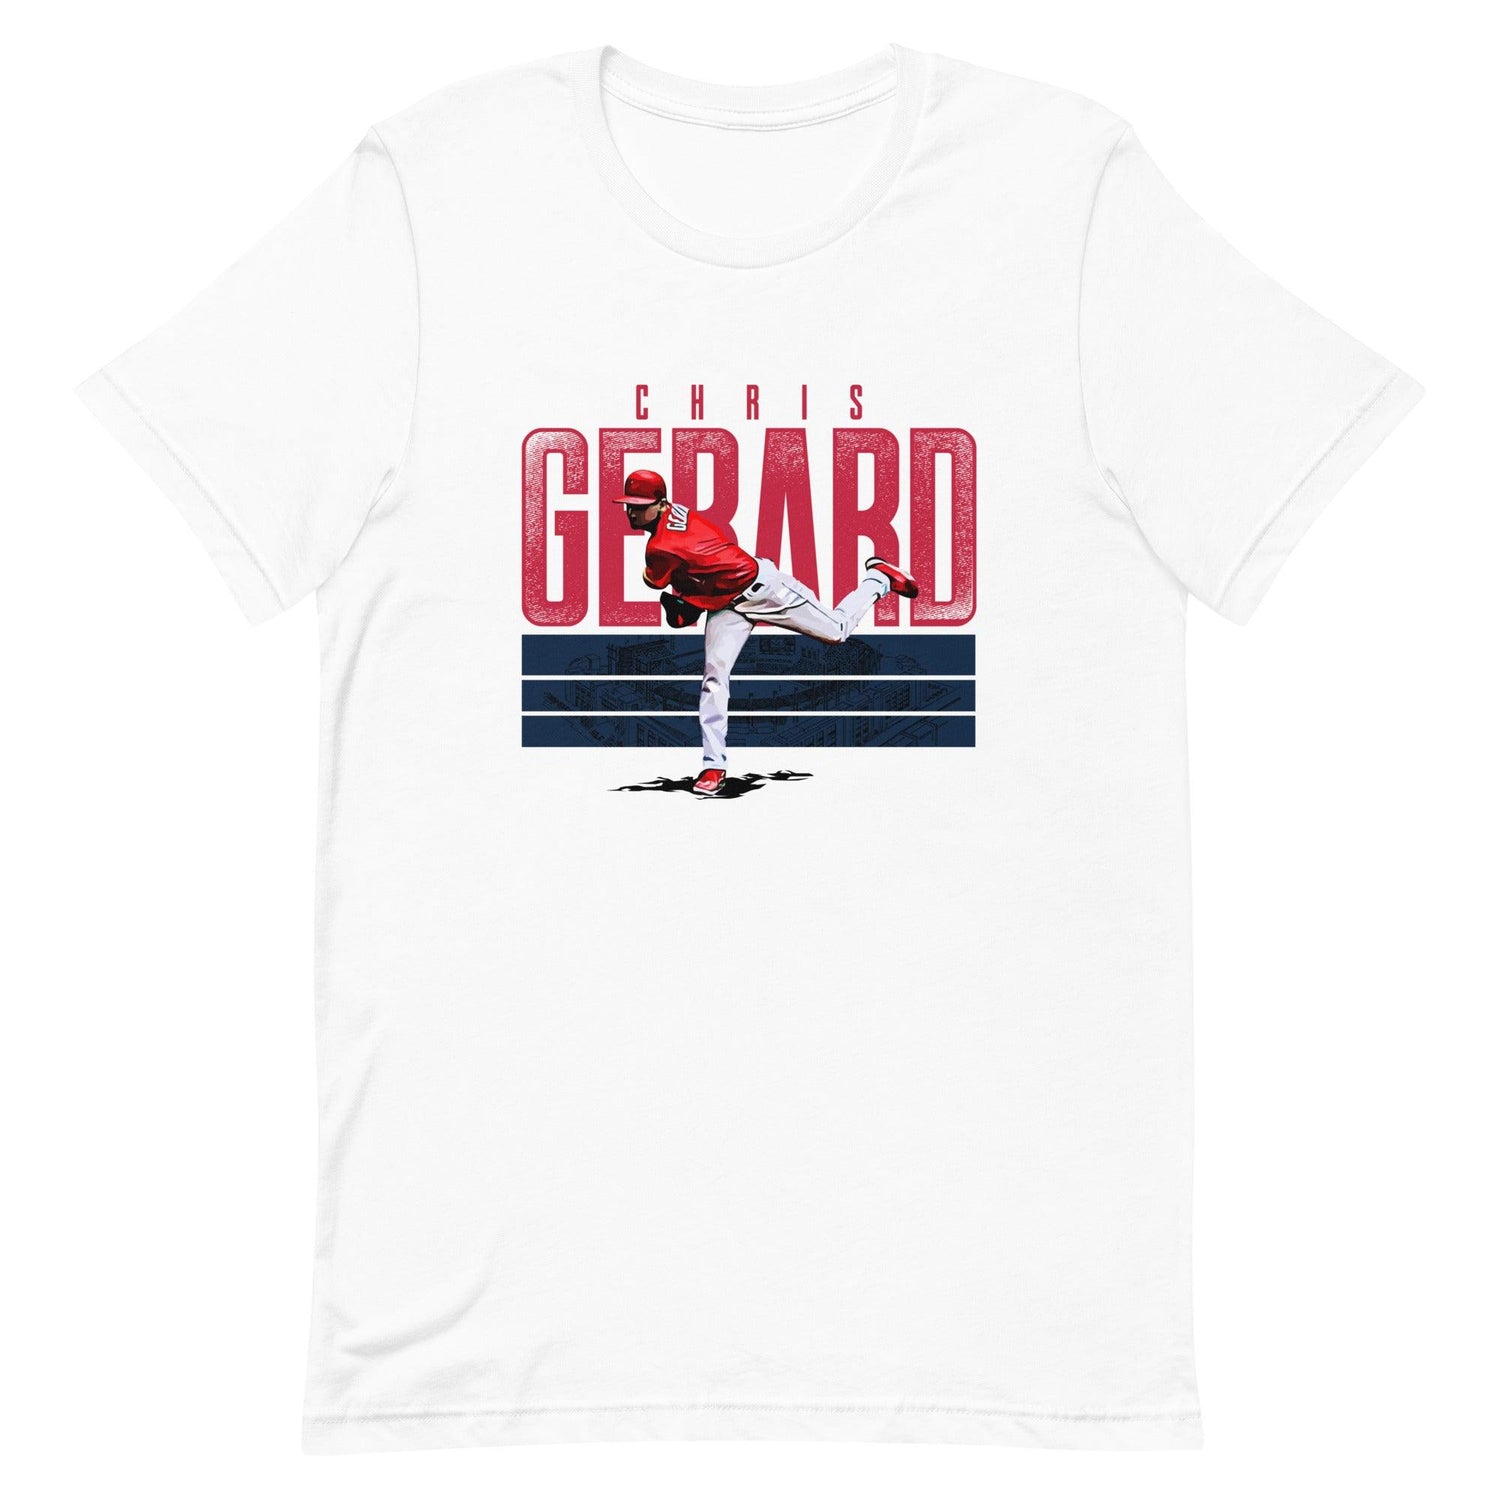 Chris Gerard “Essential” t-shirt - Fan Arch